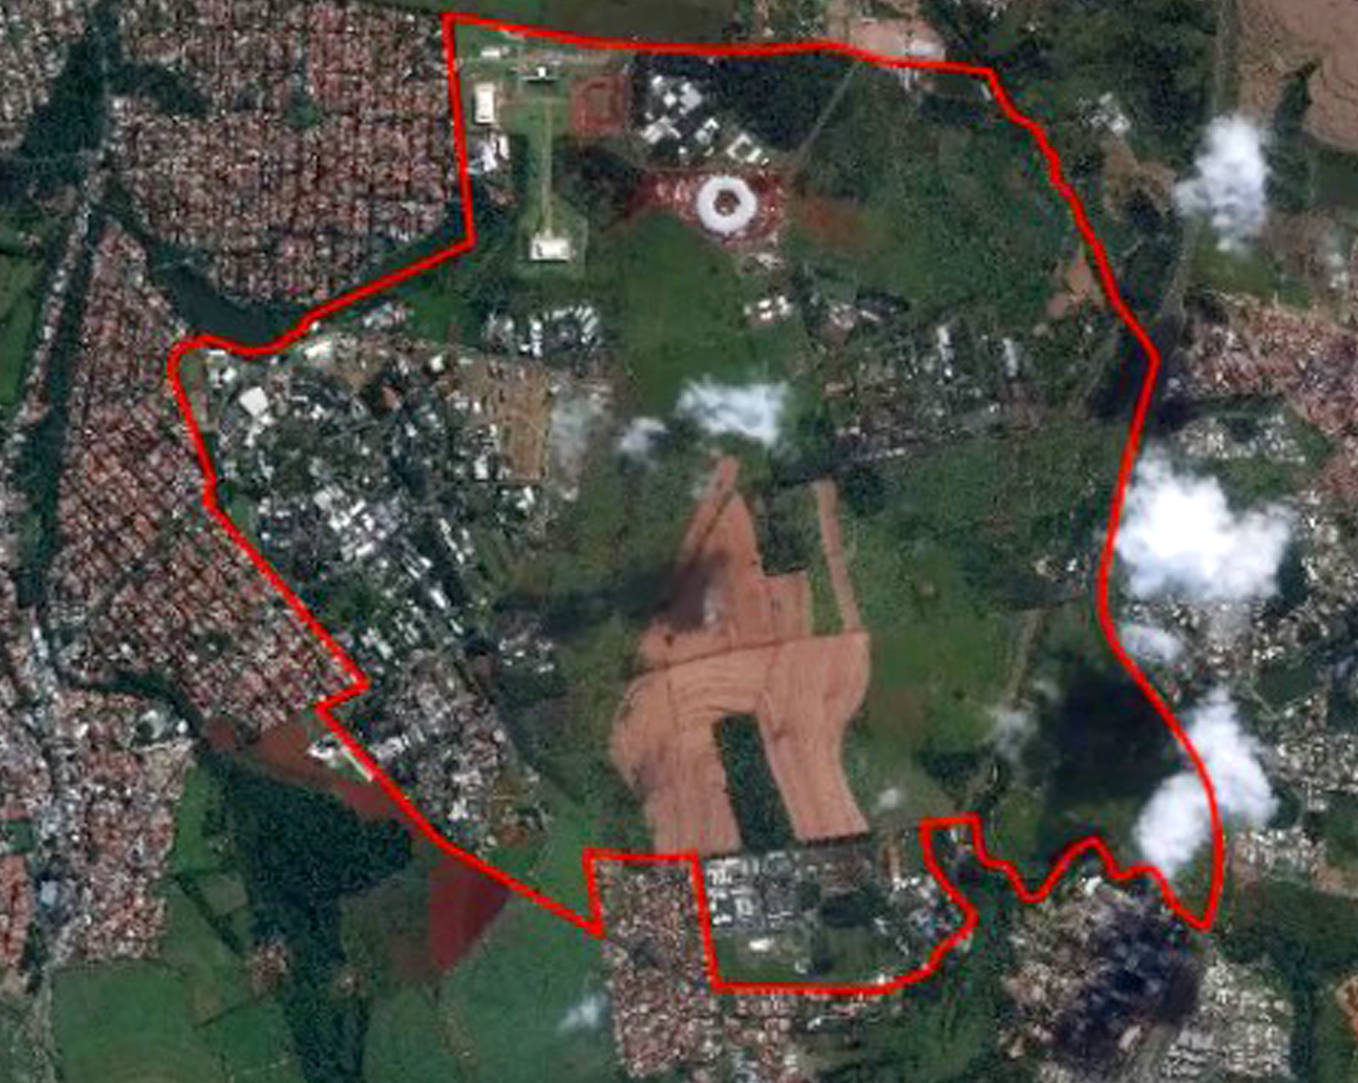 vista aérea da área em que será instalado o HIDS